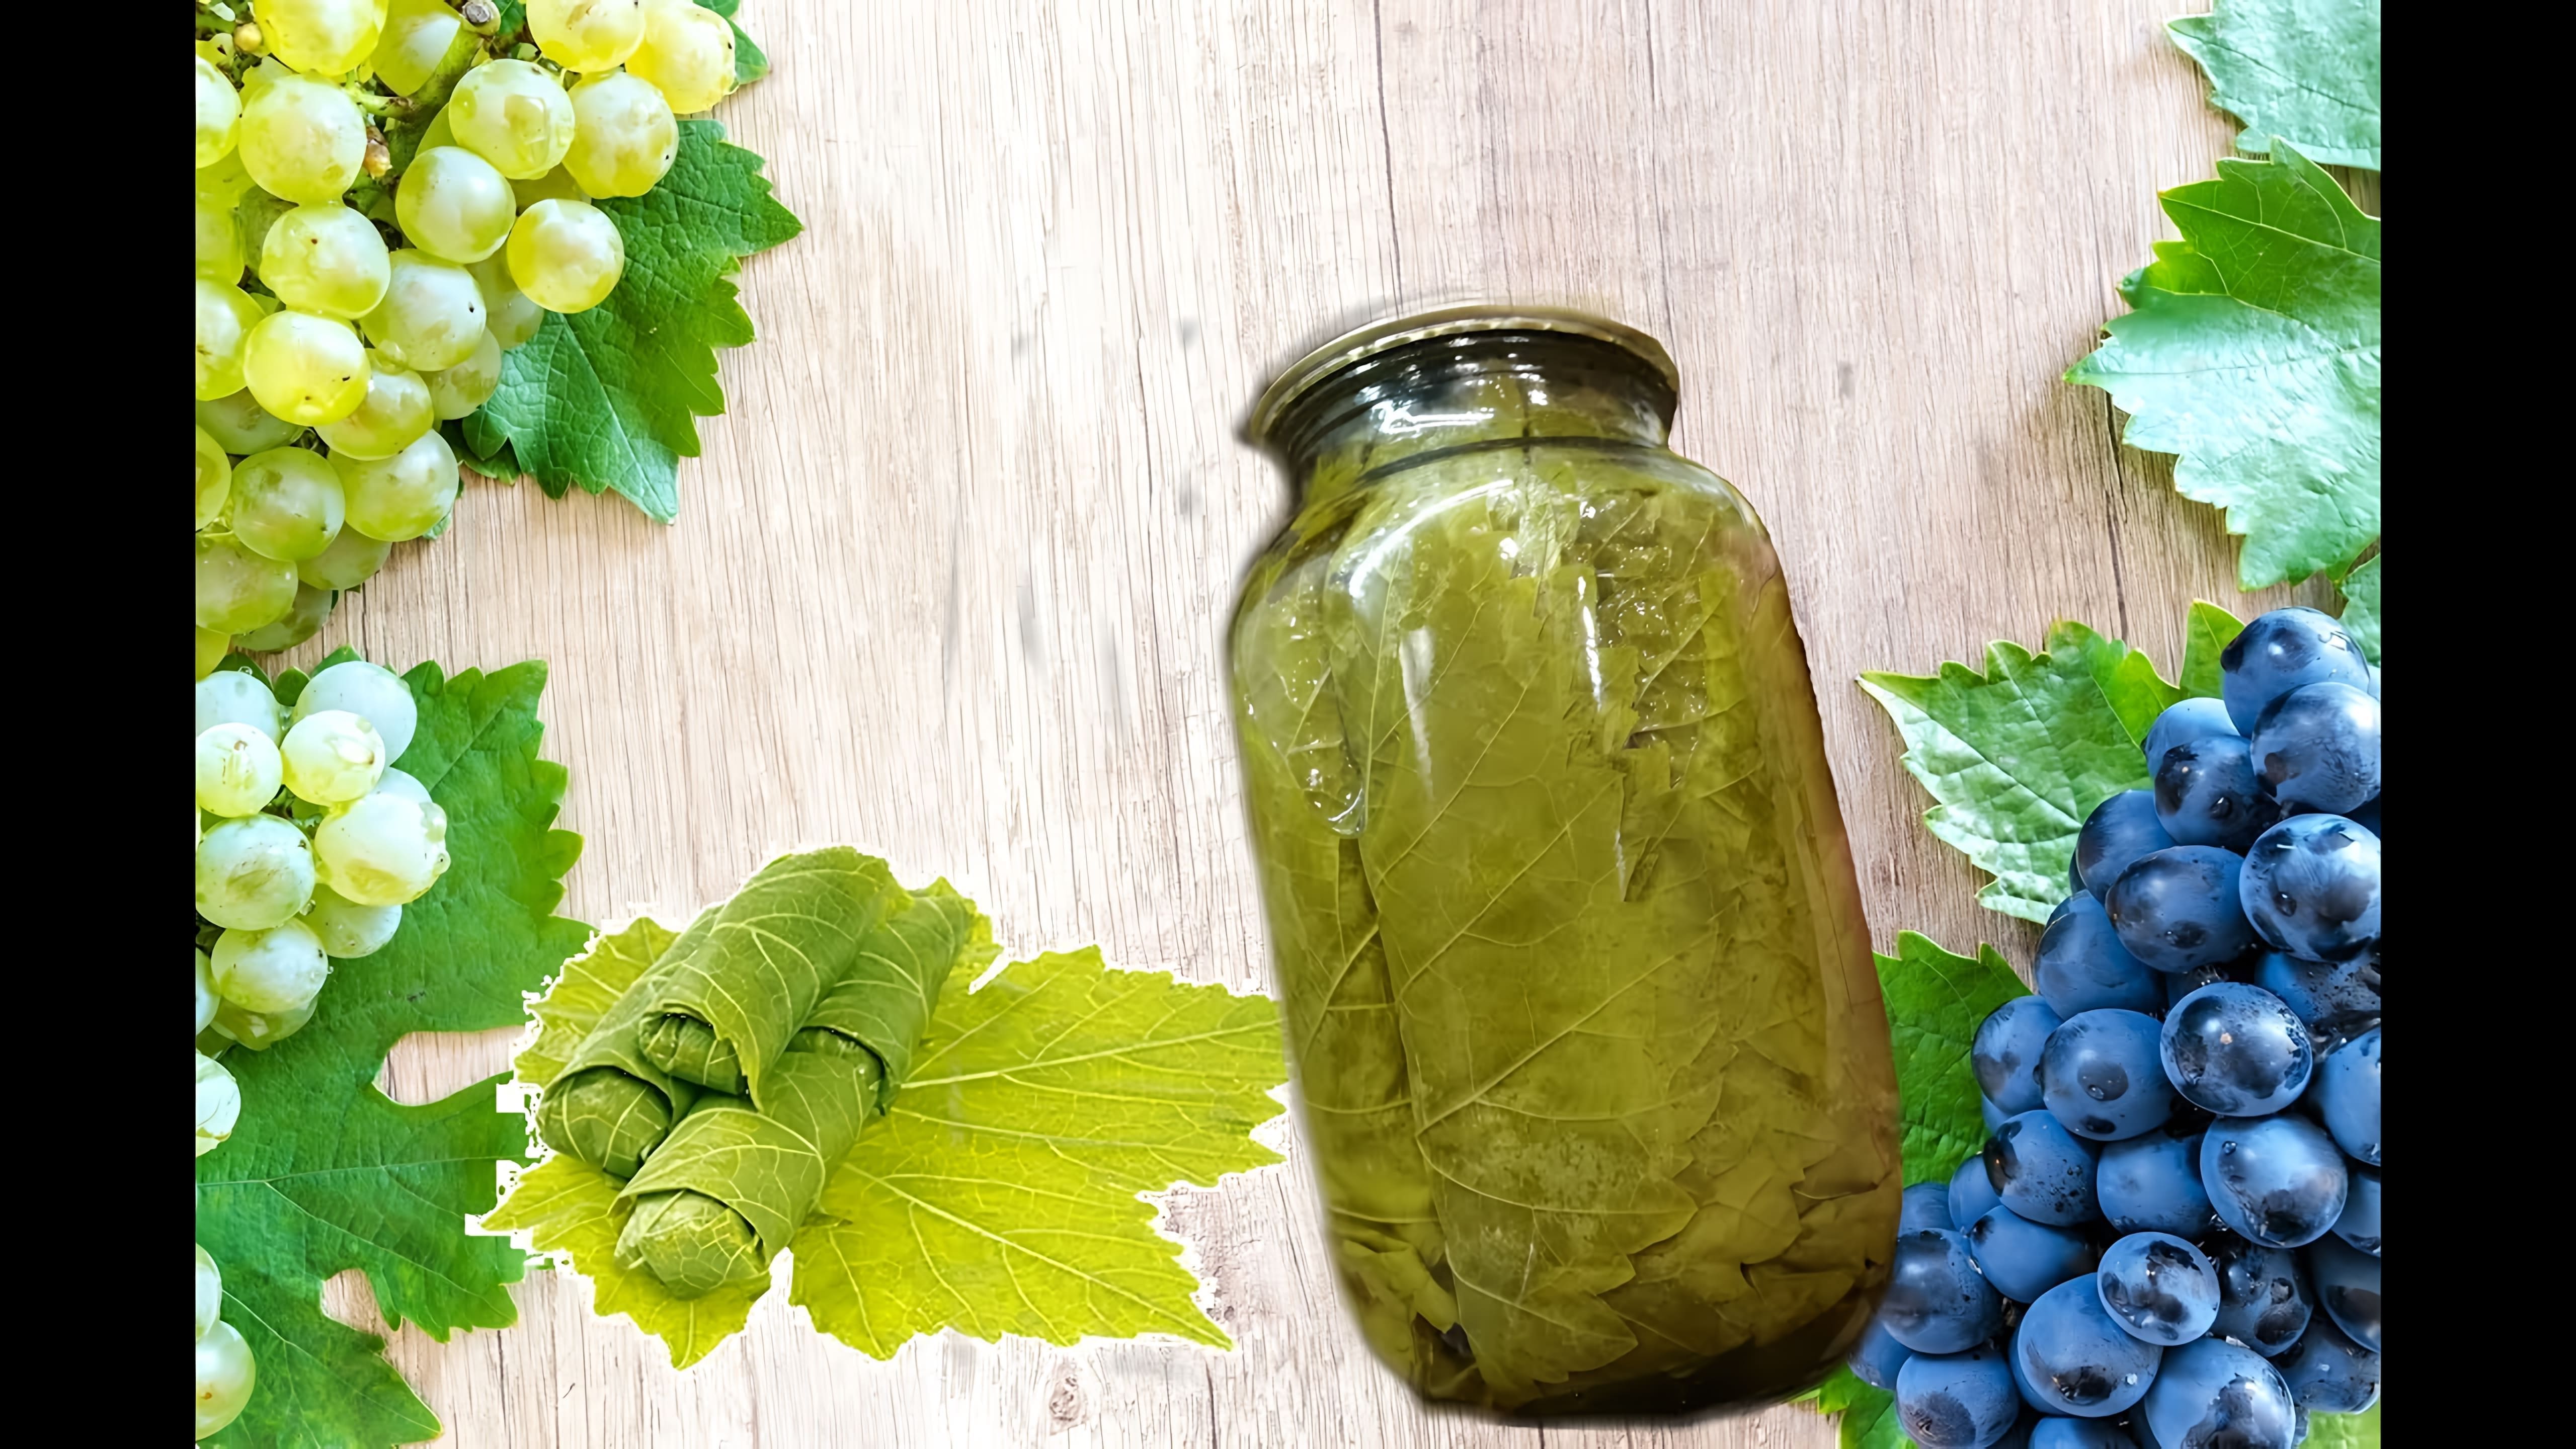 Маринованные виноградные листья - это вкусное и полезное блюдо, которое можно приготовить в домашних условиях